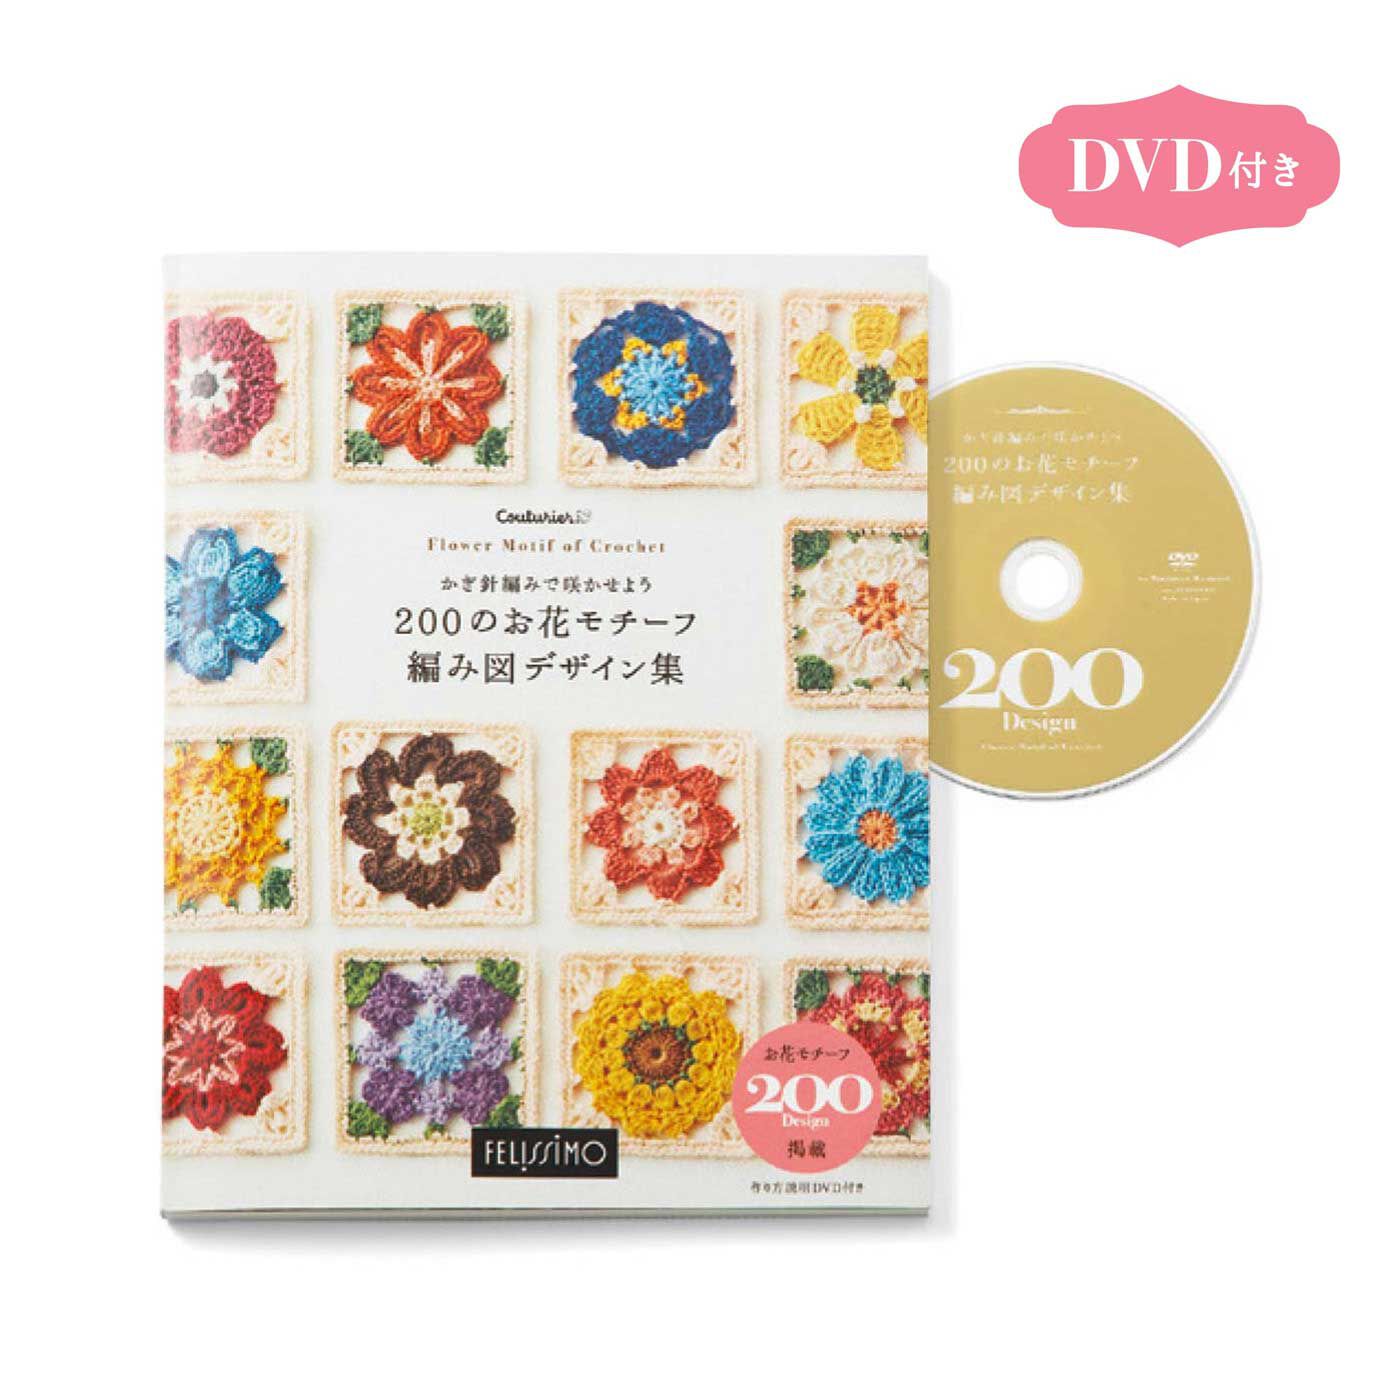 Couturier|かぎ針編みで咲かせよう 200のお花モチーフ 編み図デザイン集|●本1冊と、DVDが付いています。